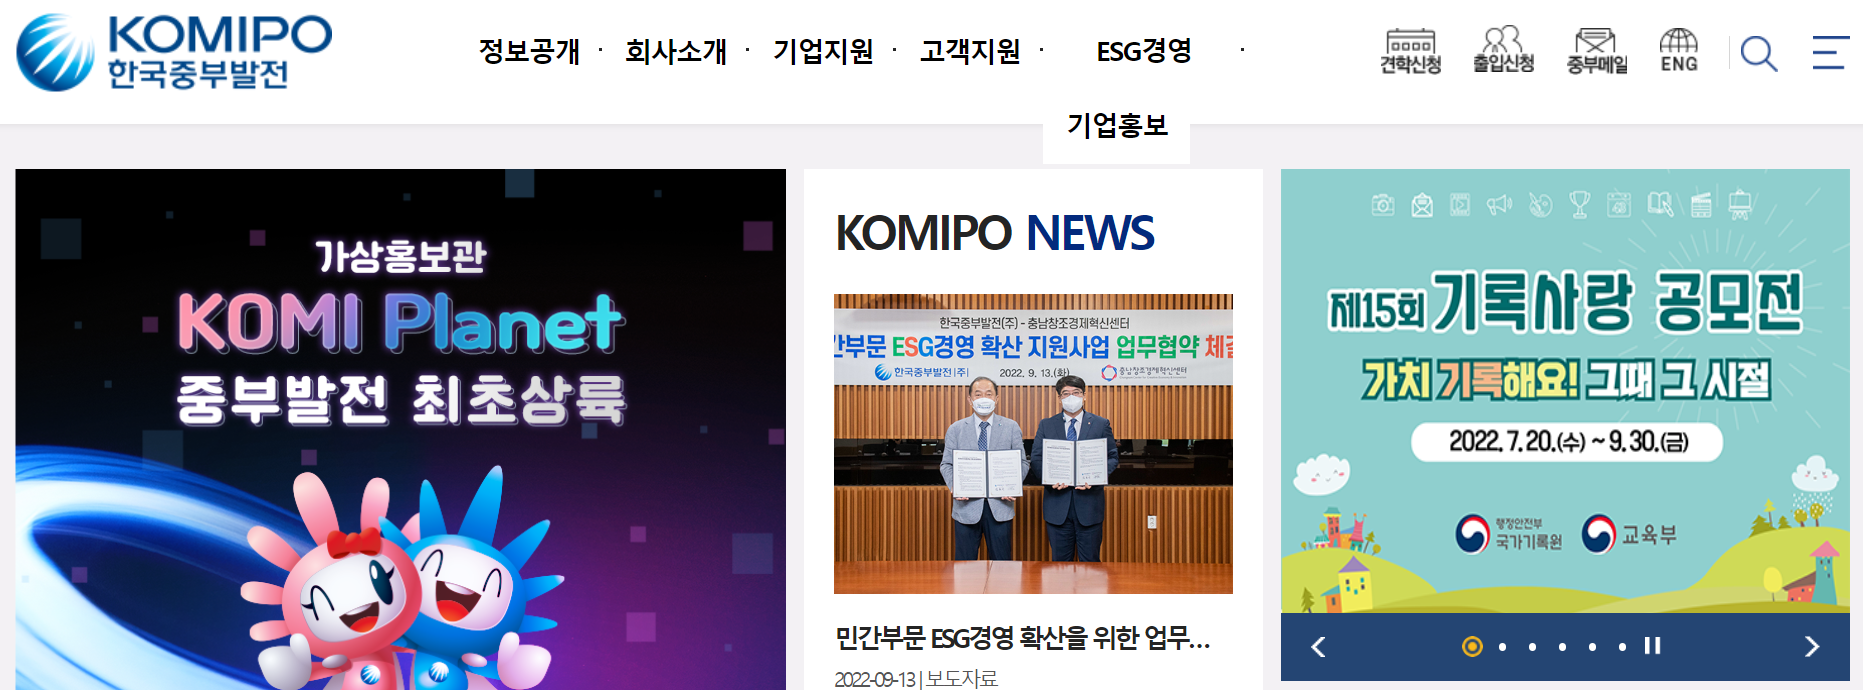 한국중부발전 홈페이지 메인화면